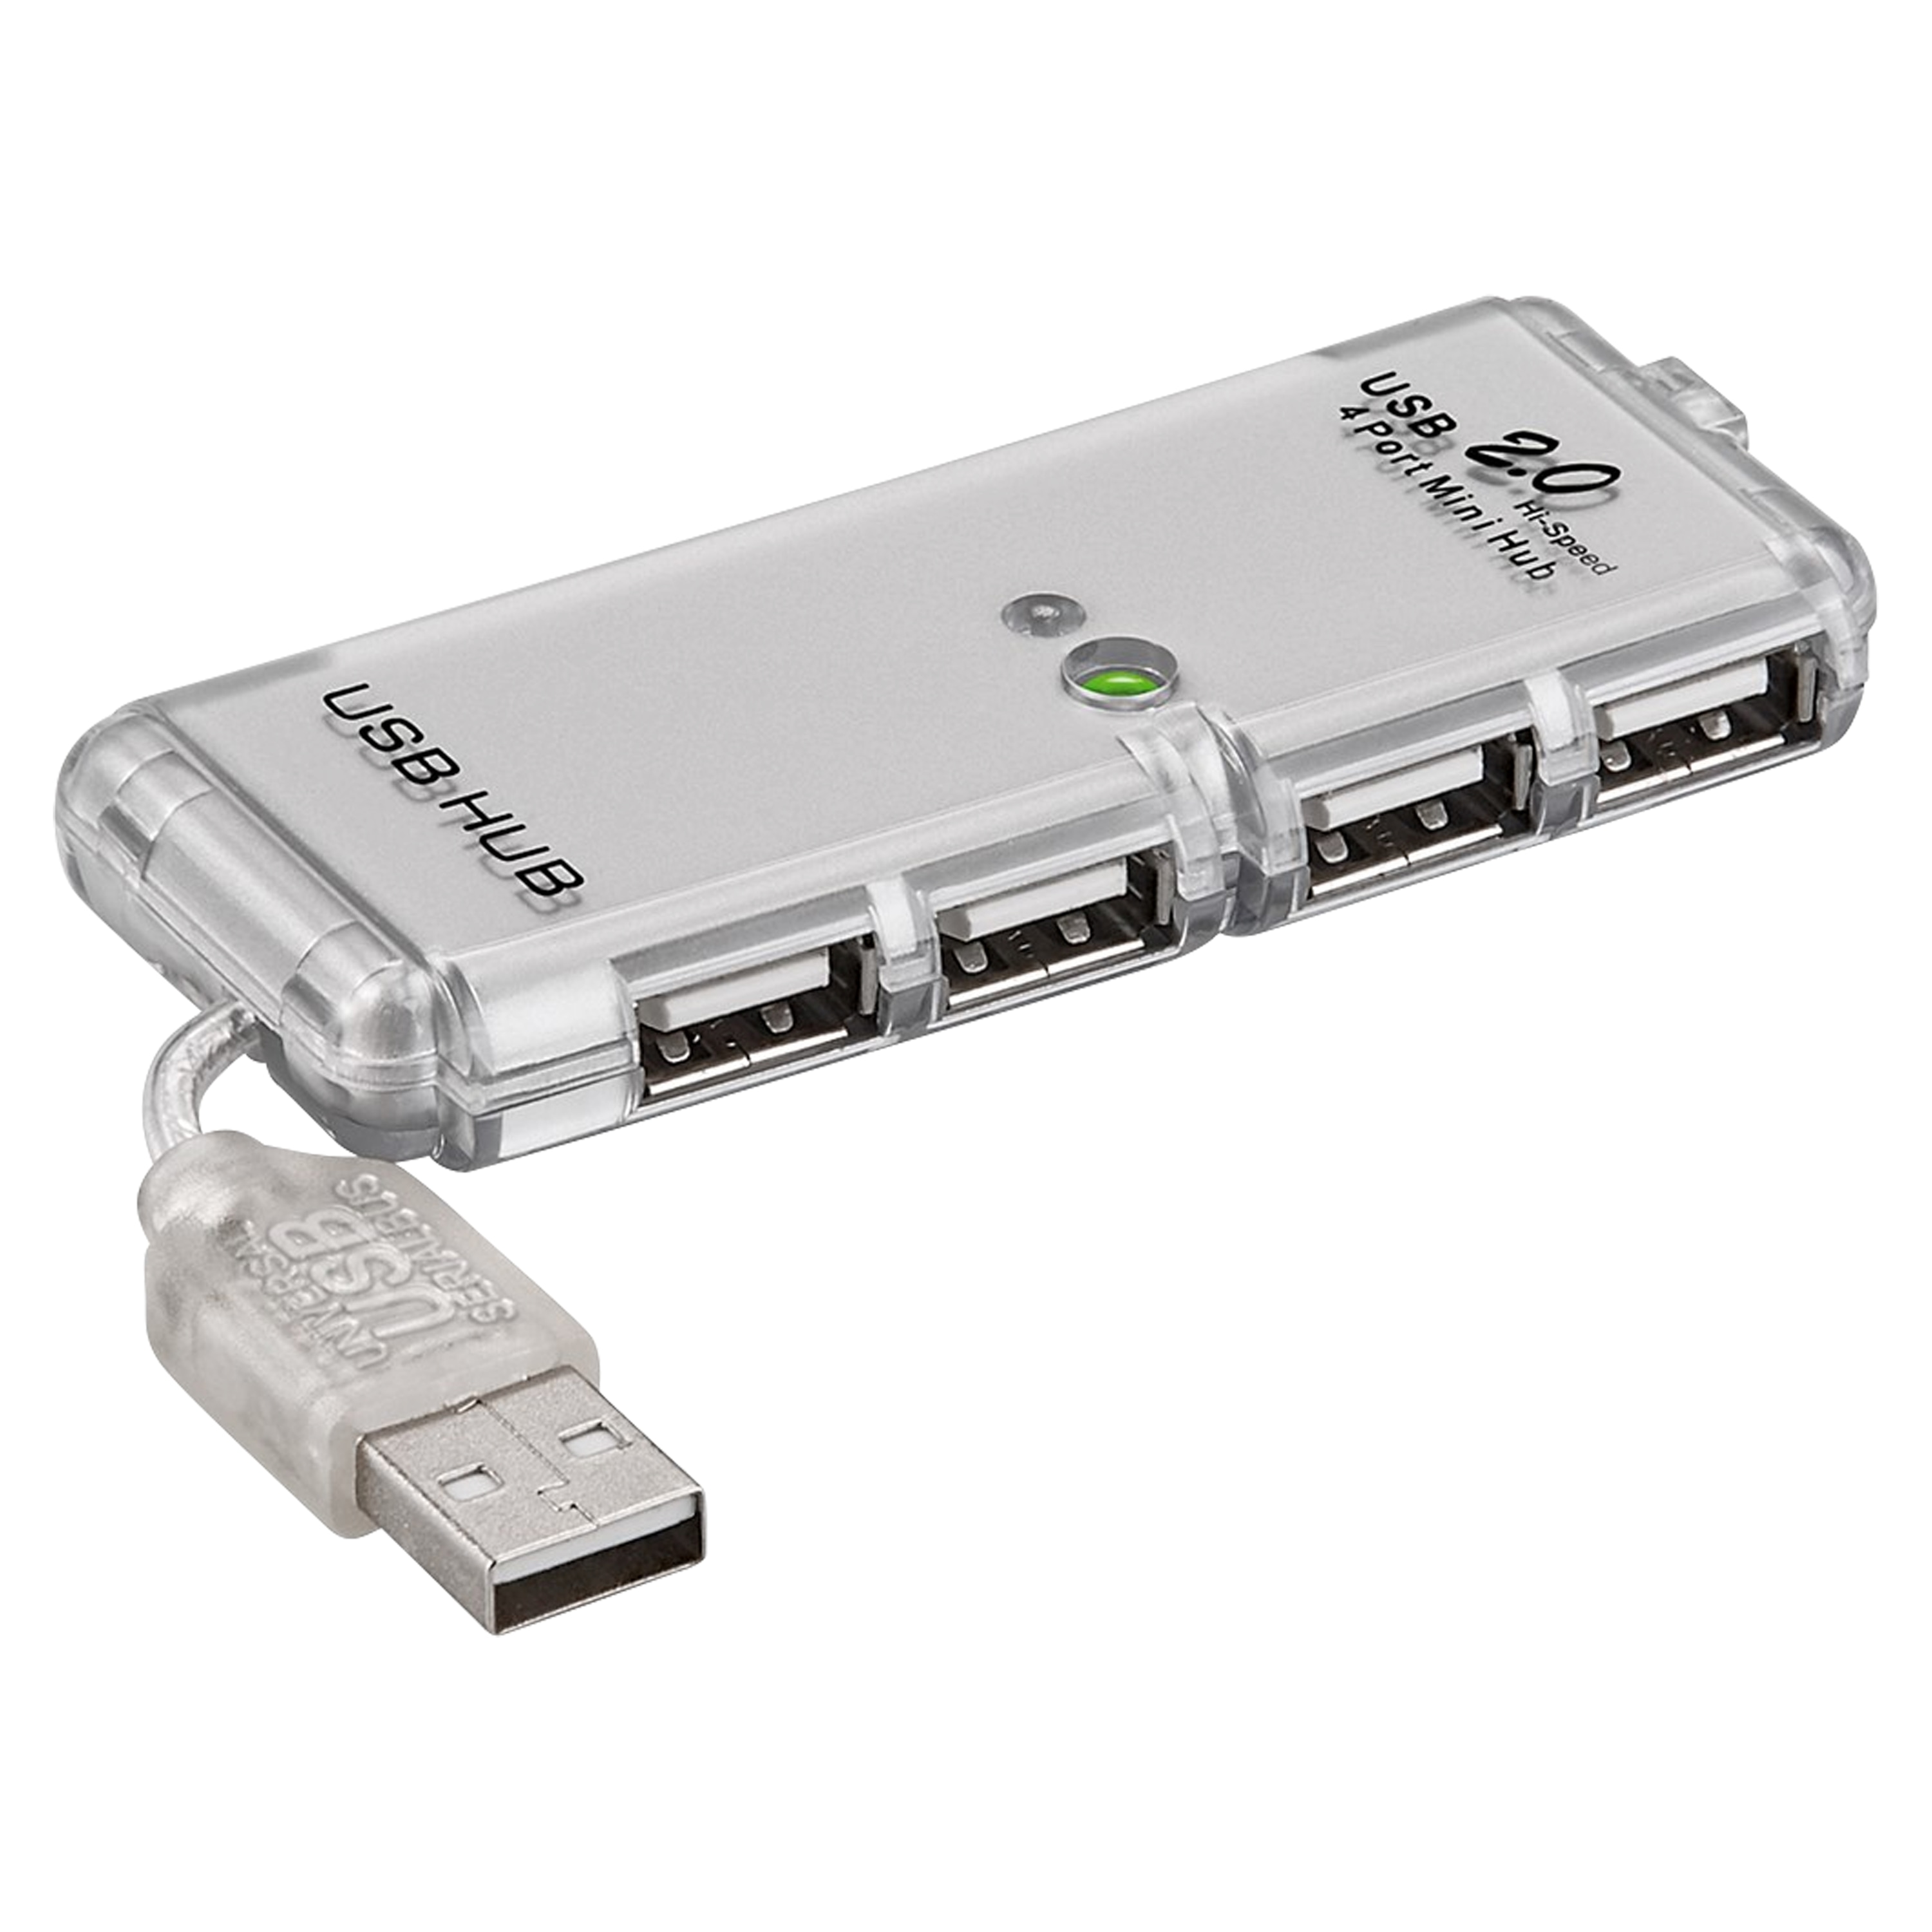 GOOBAY 4-fach USB 2.0 Hi-Speed Hub, zum Verbinden von bis zu 4 USB-Geräten mit einem USB-Anschluss, sehr kompakte Bauform